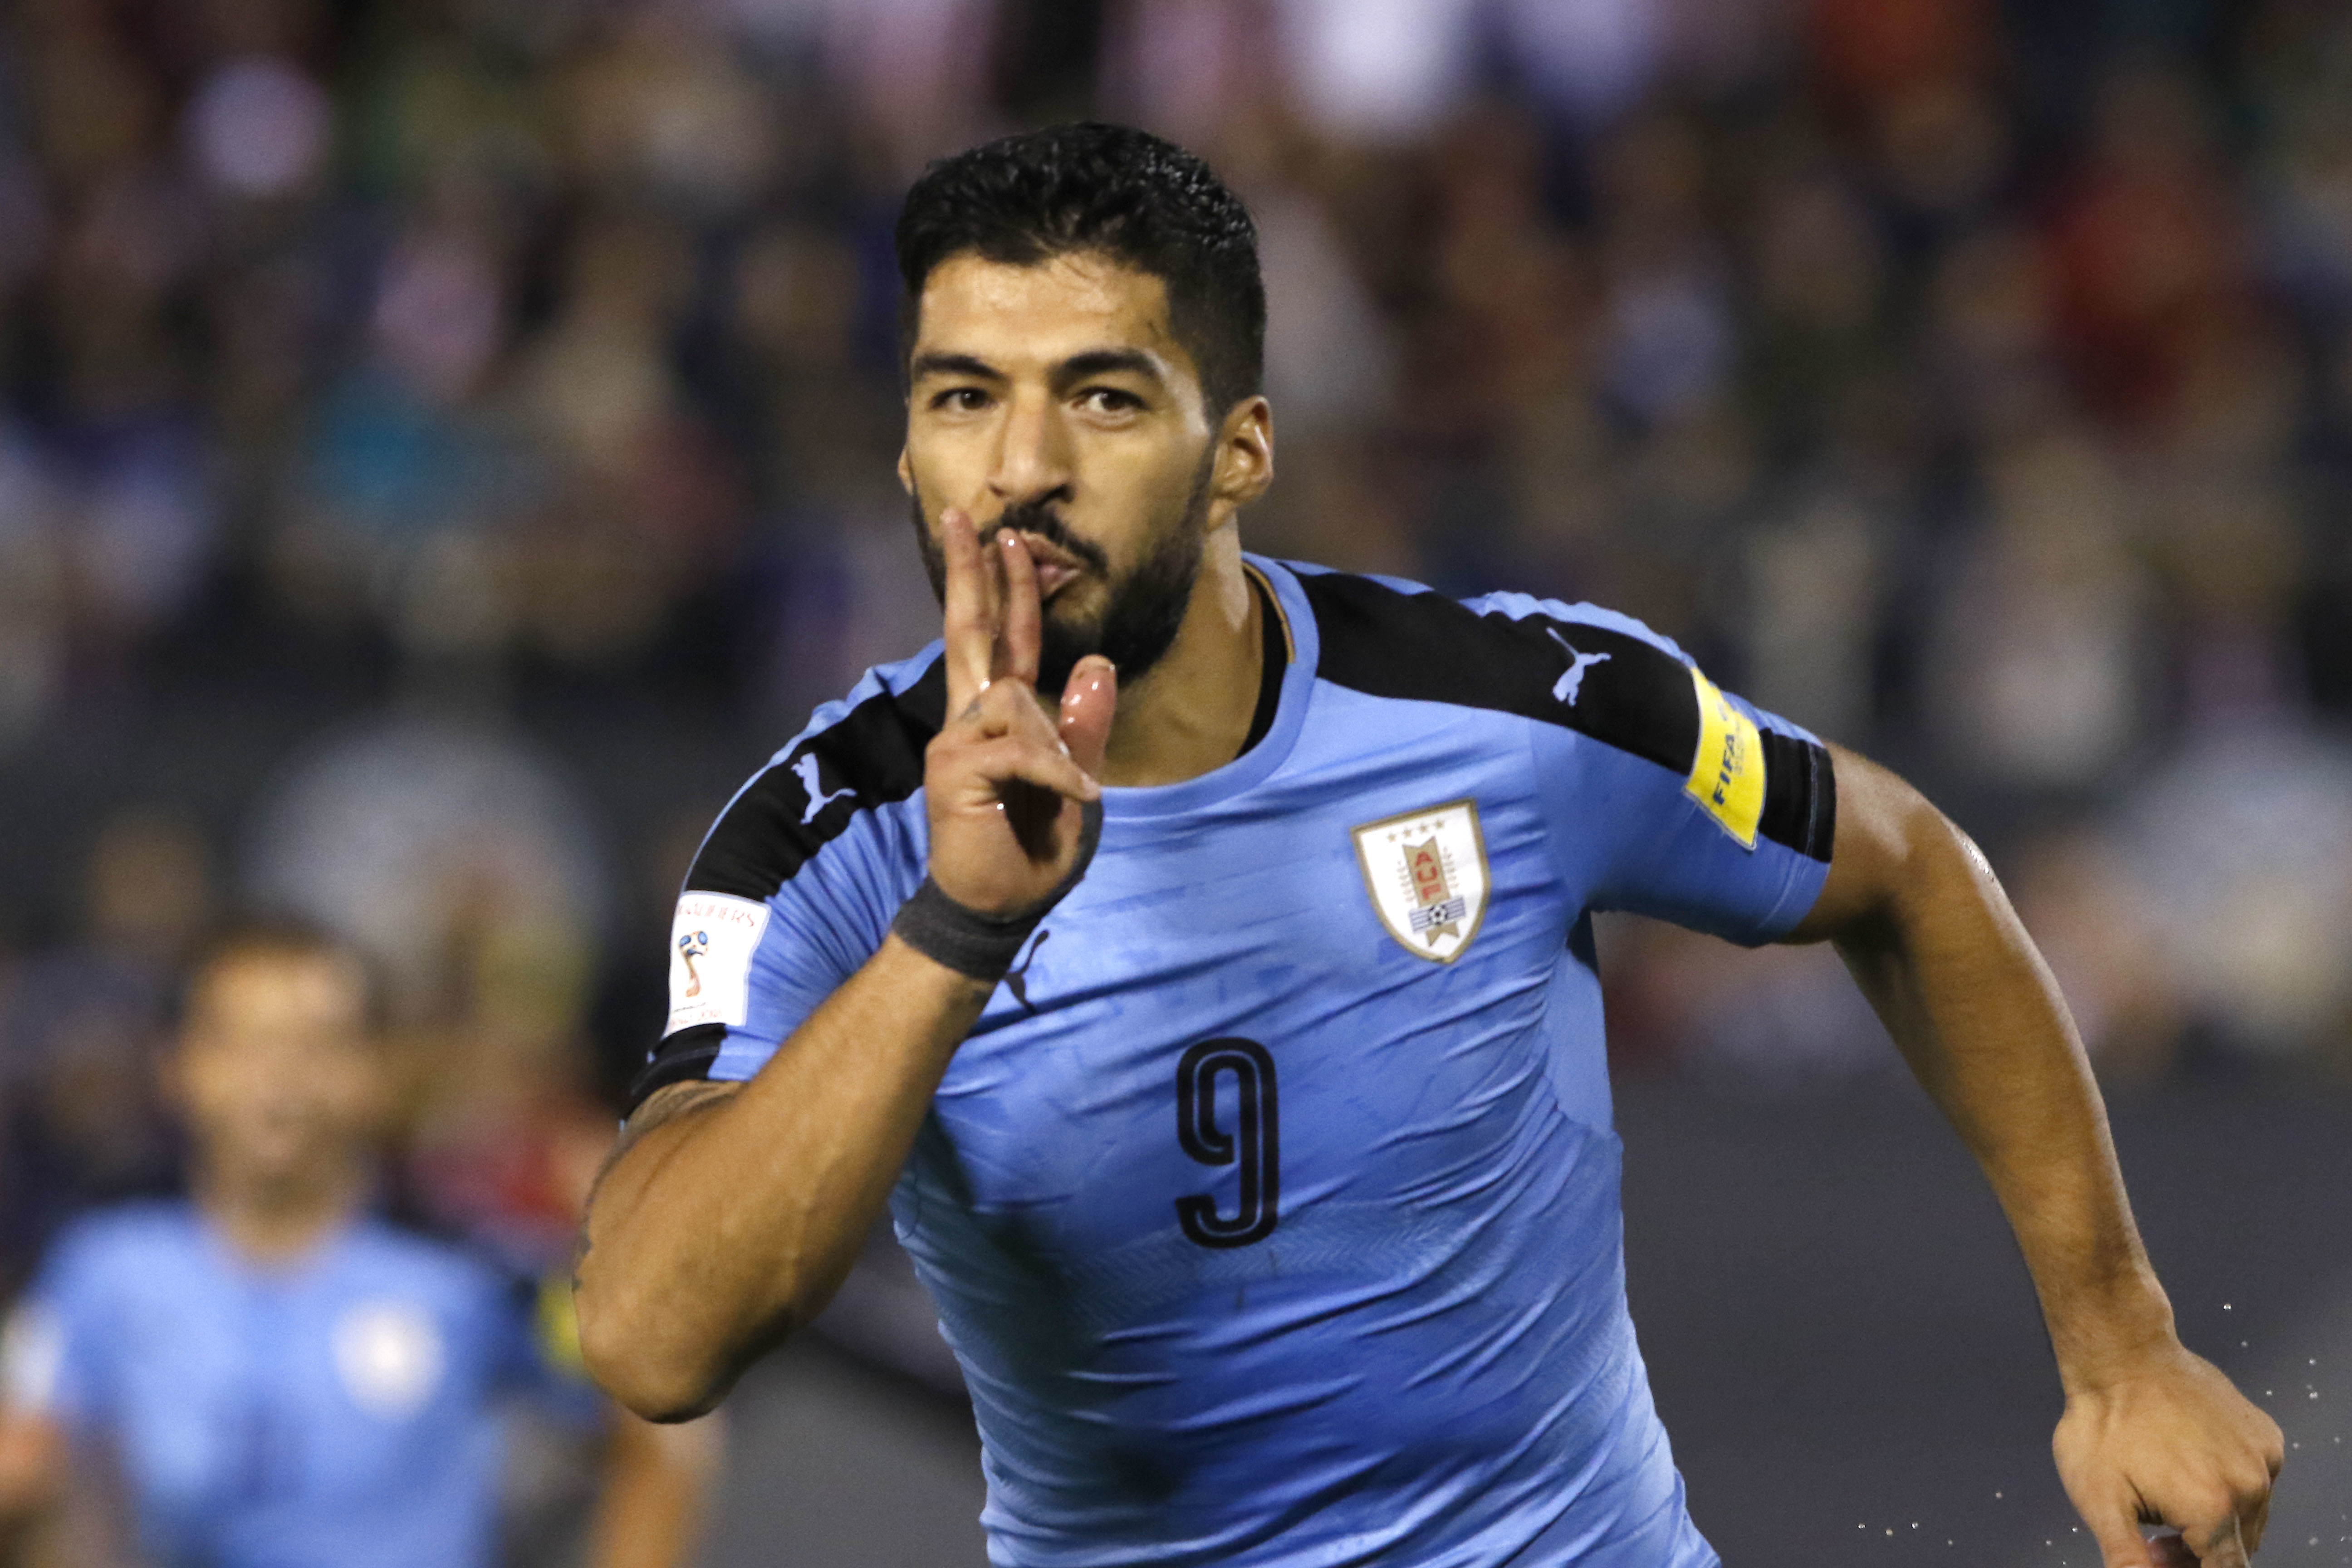 Uniforme de la selección de fútbol de Uruguay - Wikipedia, la